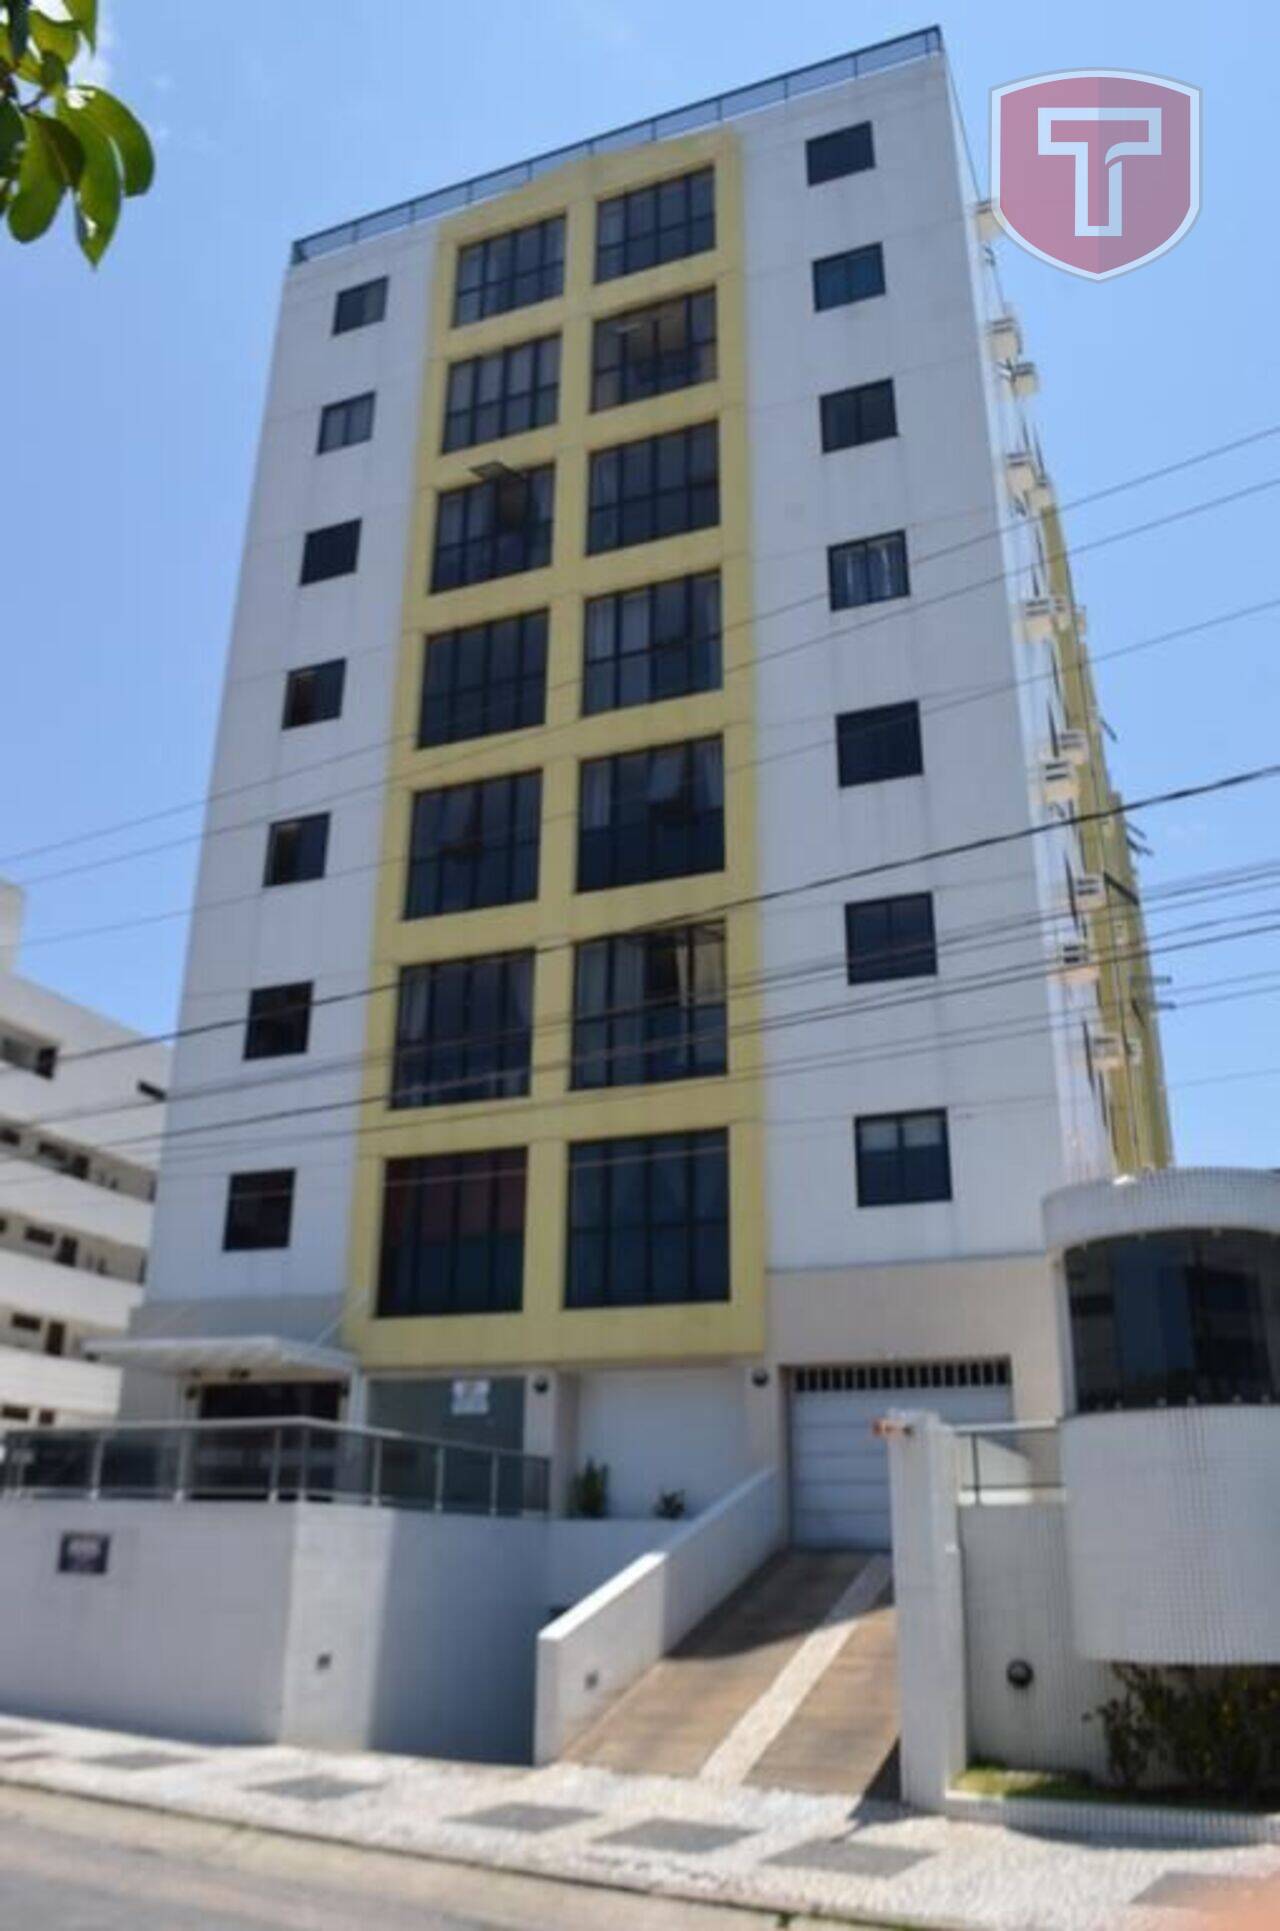 Golden Flat - Apartamento para locação com 2 dormitórios - Manaíra, João Pessoa/PB